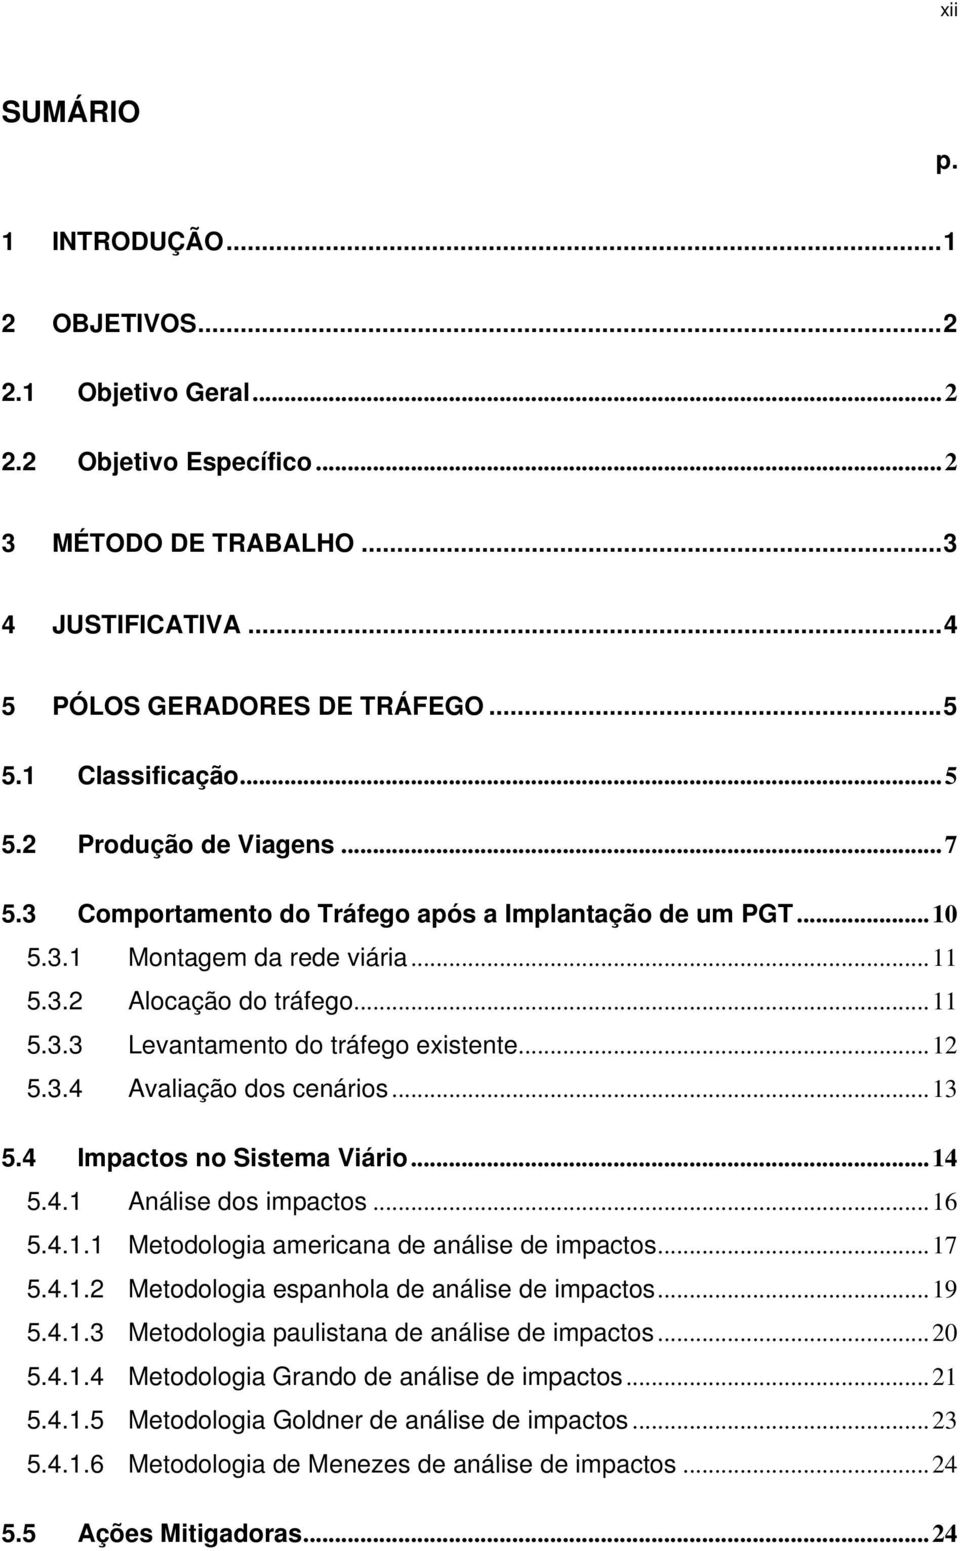 .. 12 5.3.4 Avaliação dos cenários... 13 5.4 Impactos no Sistema Viário... 14 5.4.1 Análise dos impactos... 16 5.4.1.1 Metodologia americana de análise de impactos... 17 5.4.1.2 Metodologia espanhola de análise de impactos.